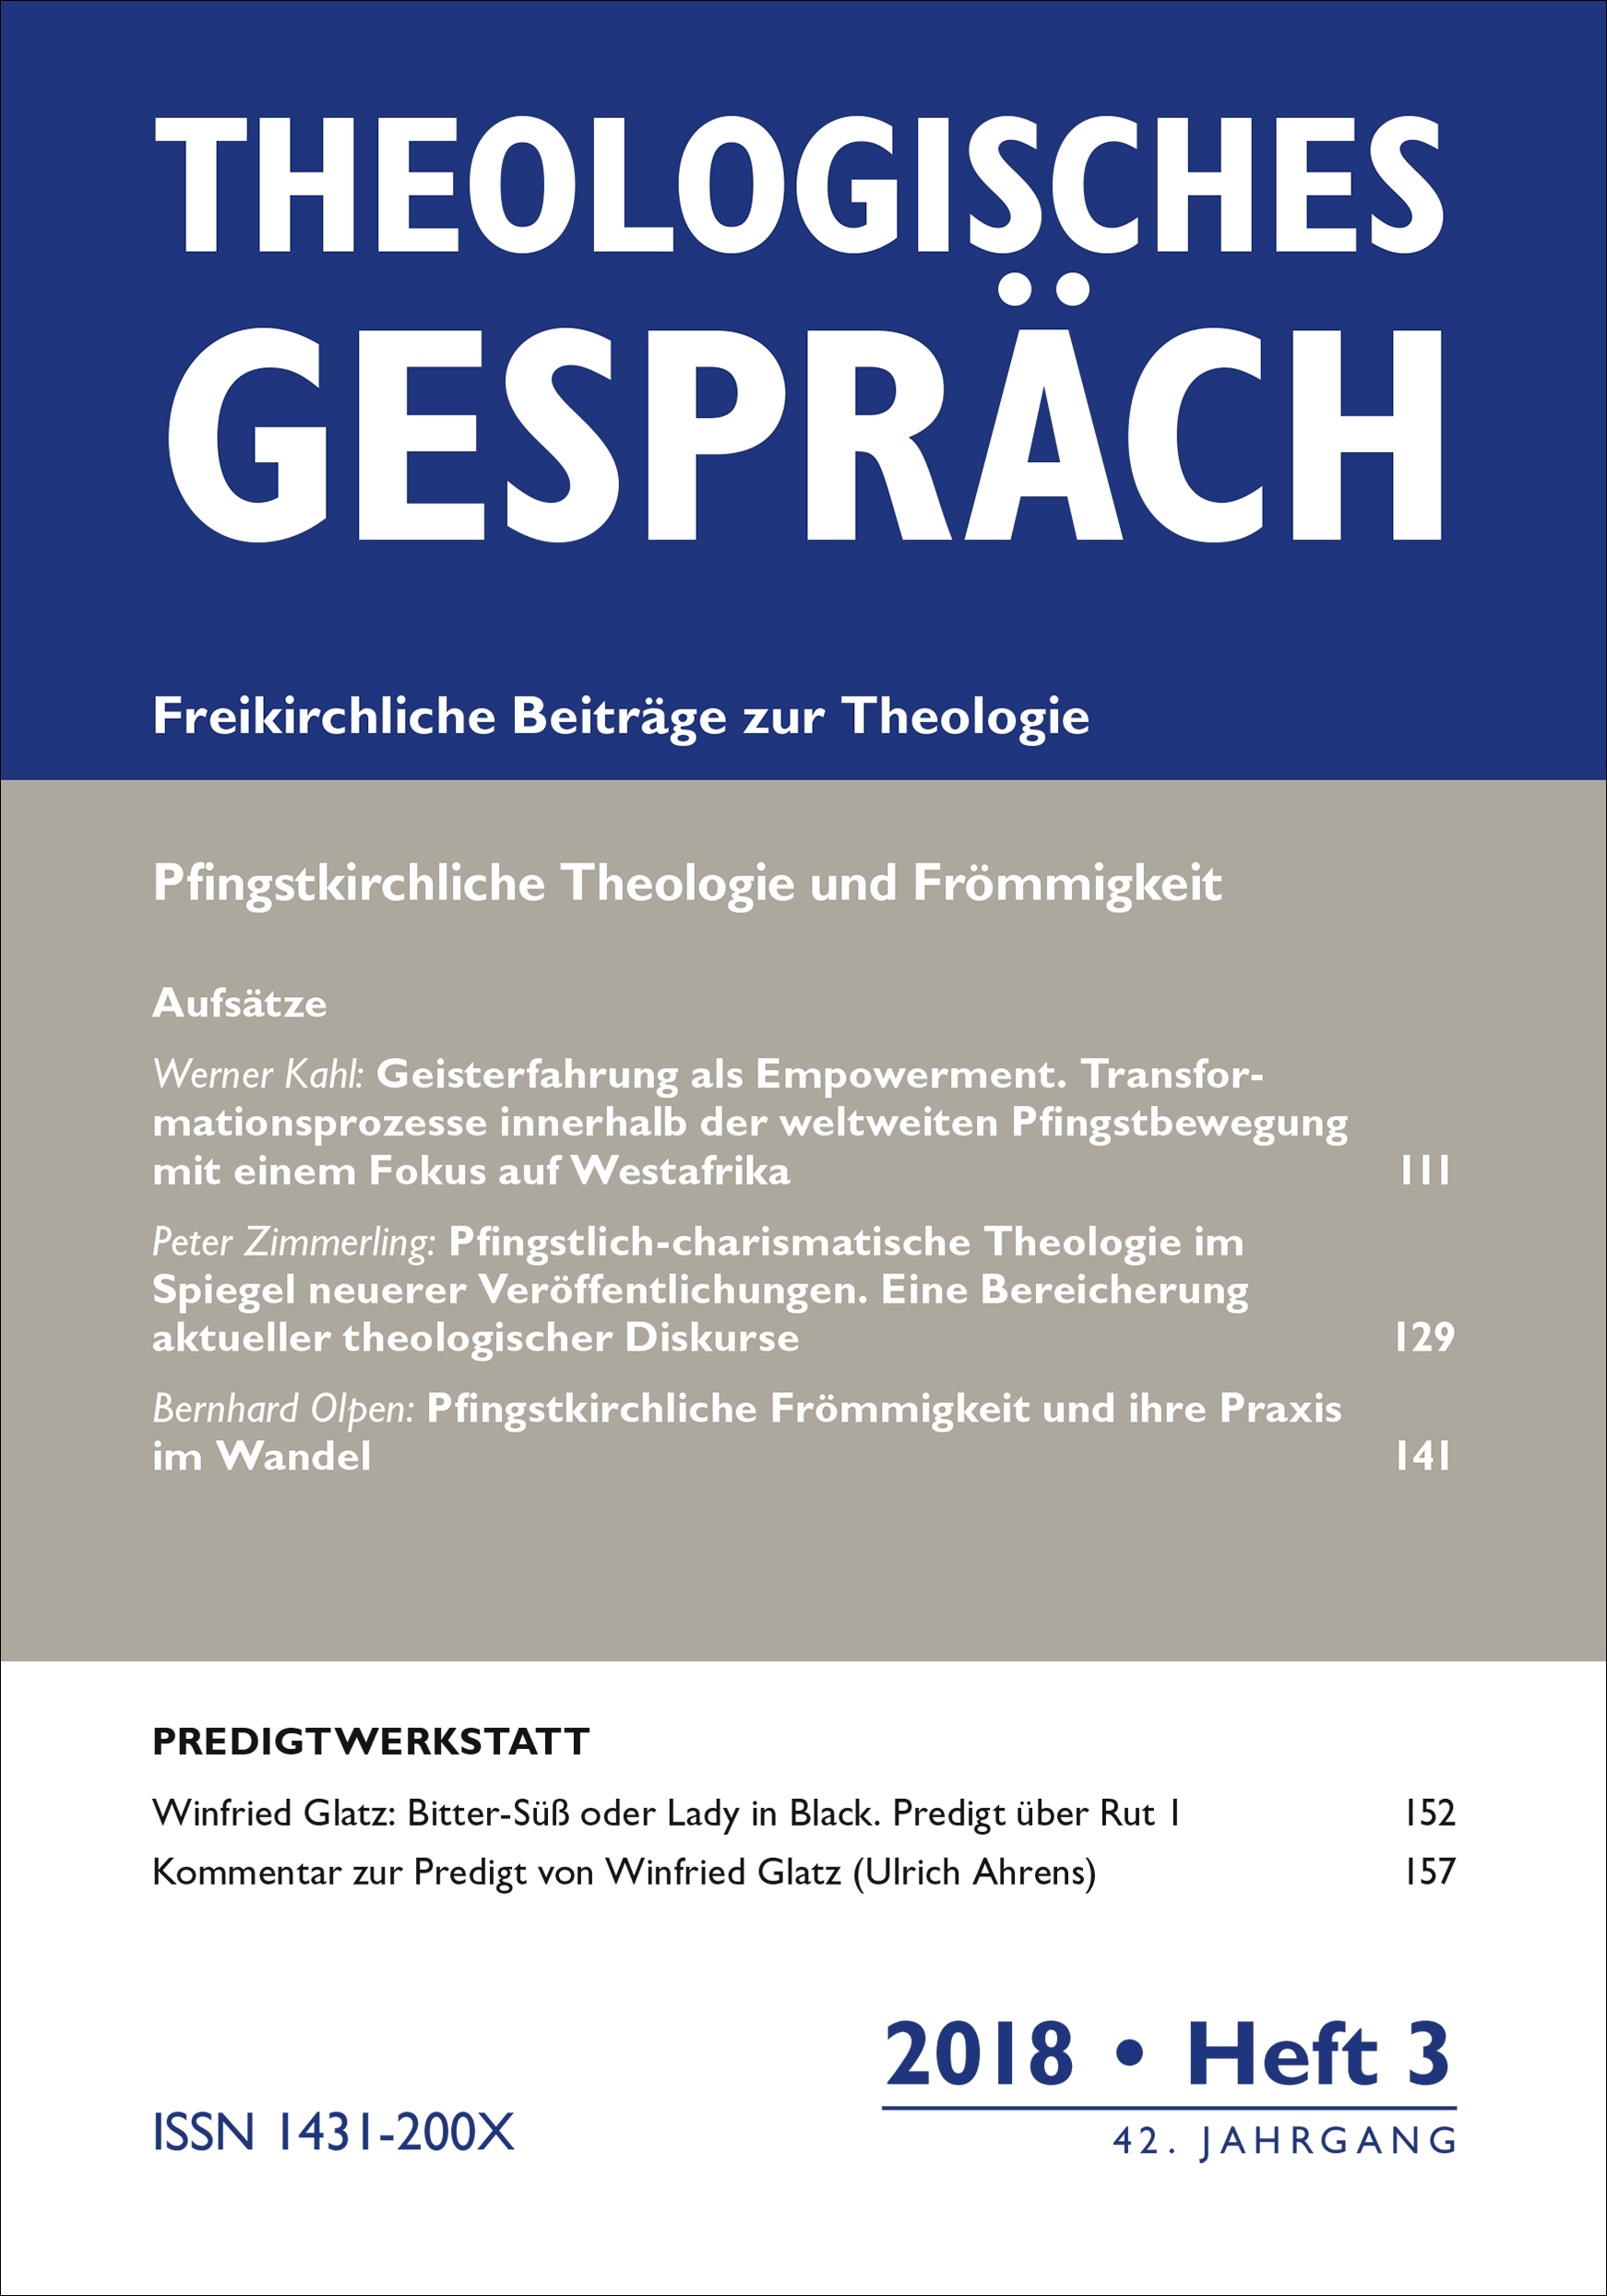 Theologisches Gespräch 03/2018